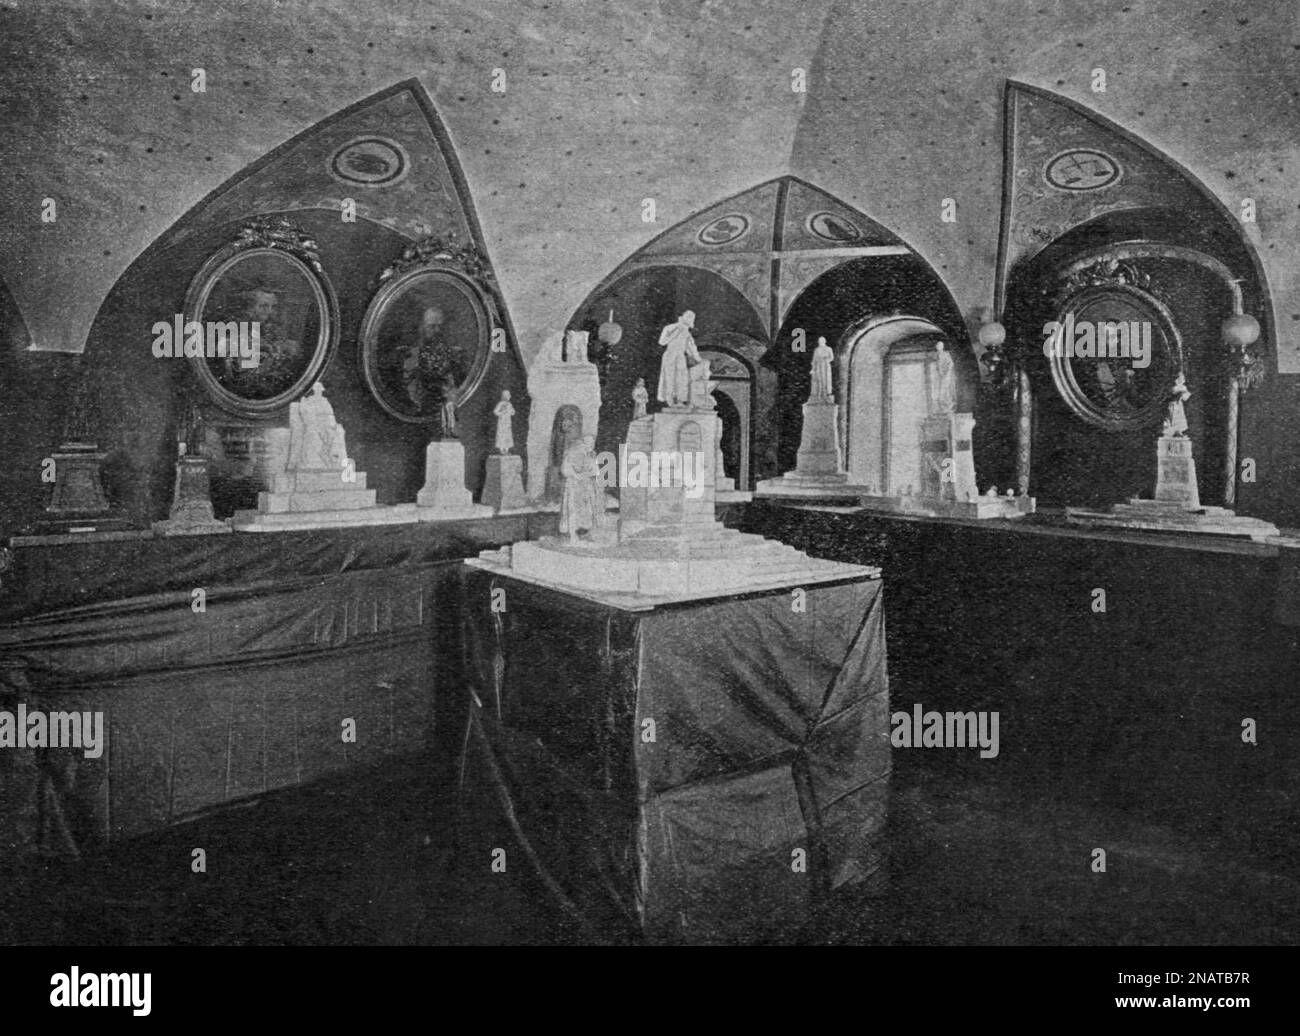 Mostra di progetti per un monumento alla prima stampante nota Ivan Fyodorov nel 1902. Foto Stock